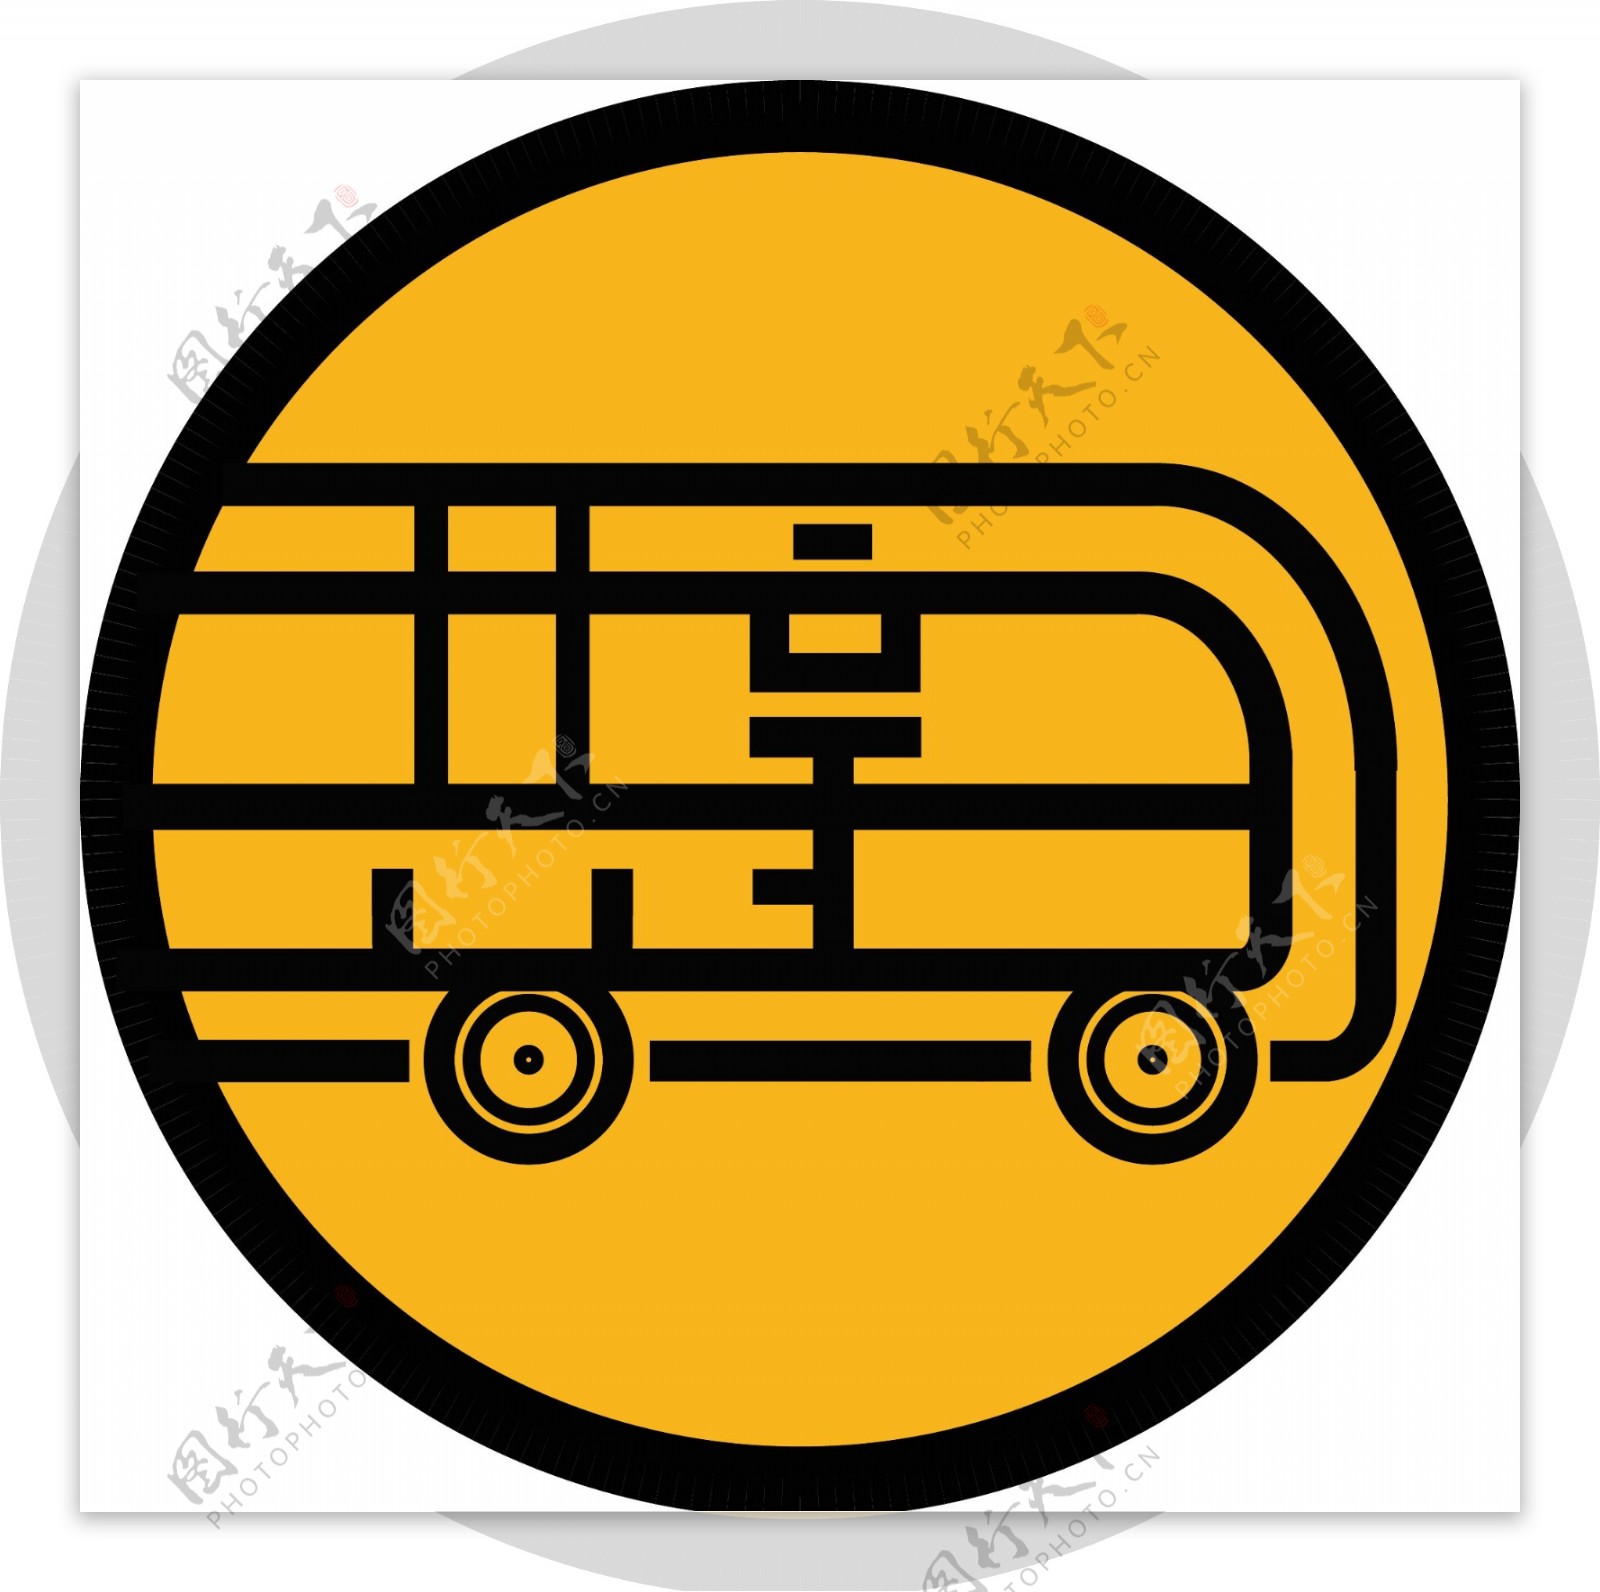 共享班车logo设计